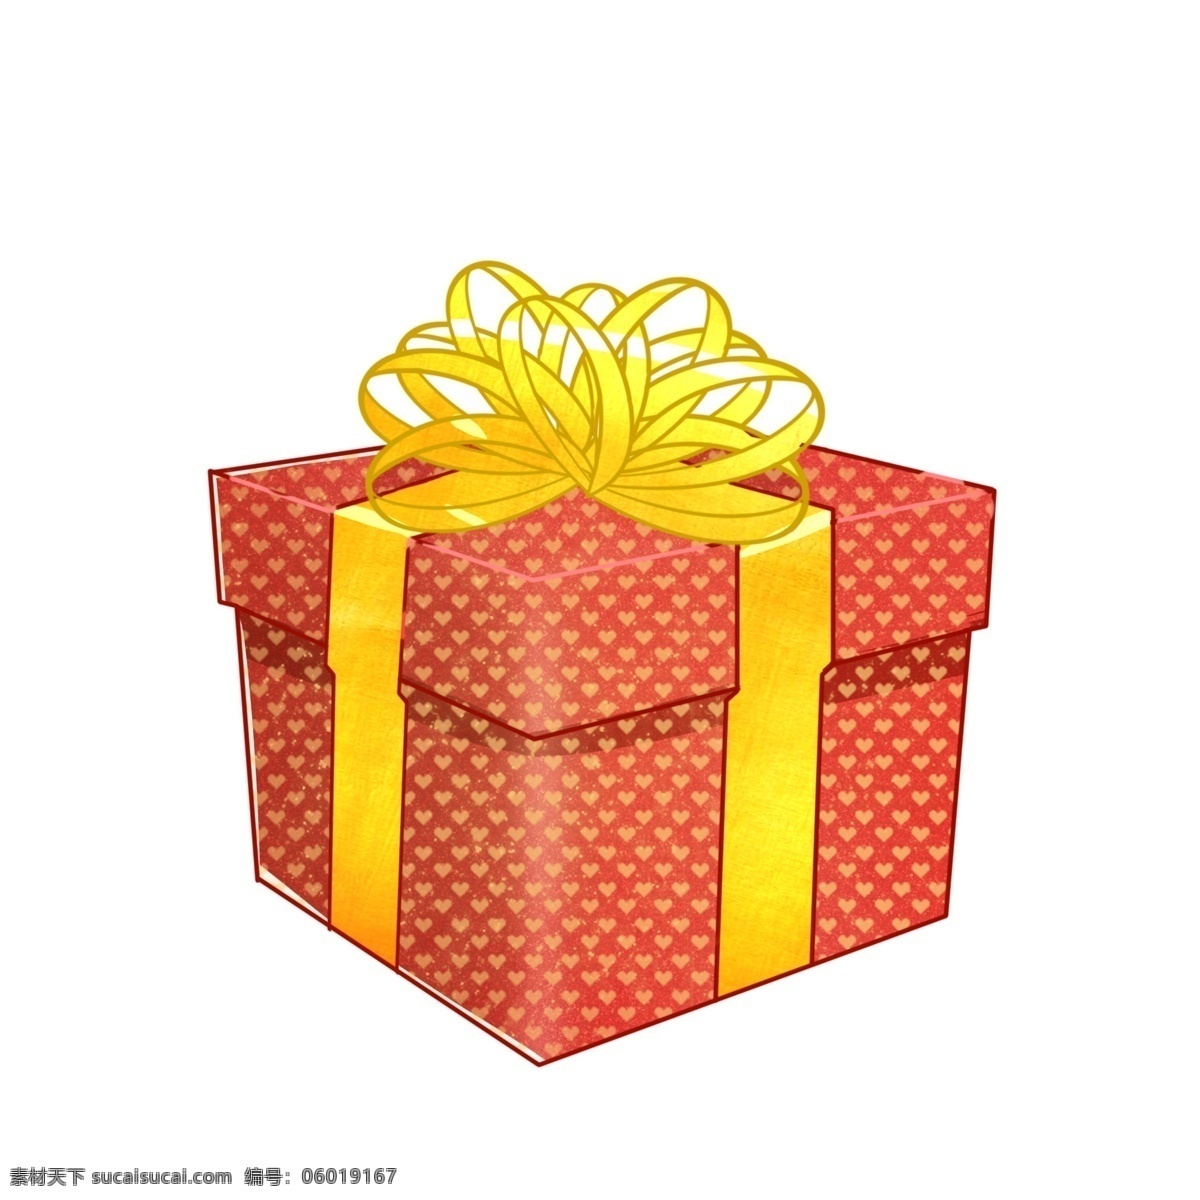 礼物 免抠图 分层礼物 惊喜 惊喜礼物 礼品 节日 庆祝 欢庆 元旦 元旦礼物 新年礼物 新年 春节 春节礼盒 彩色礼盒 生日 生日礼物 心形 心形礼盒 红色礼盒 红色 堆放 堆放礼盒 免抠图礼物 礼盒包装 包装礼物